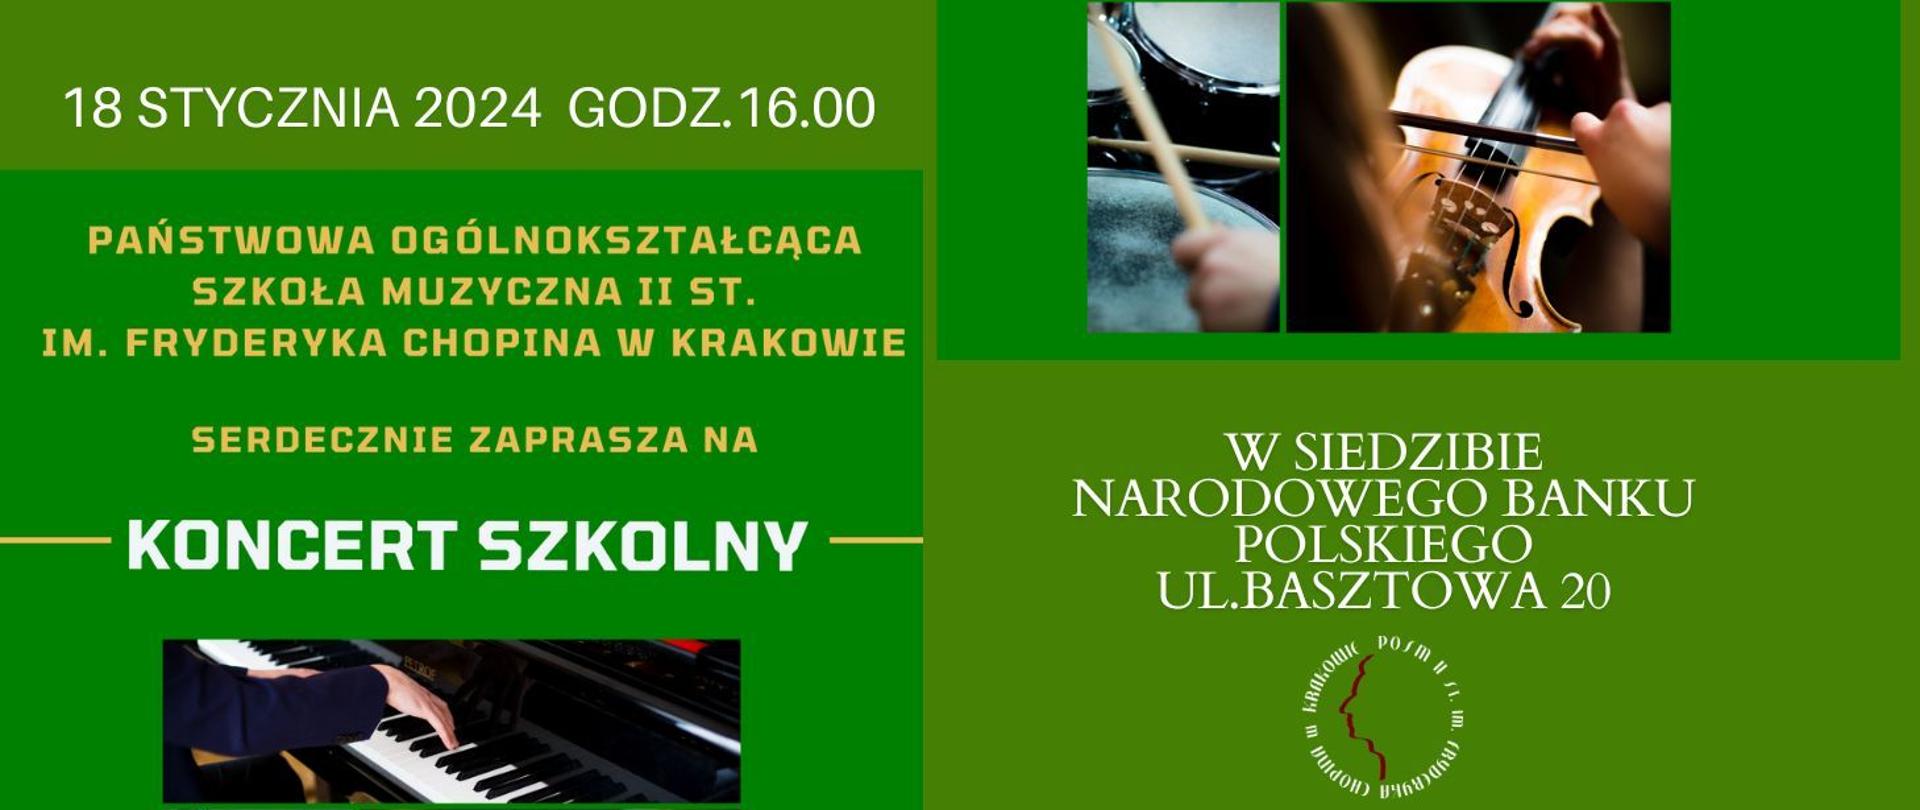 Baner, zielone tło, zdjęcia różnych instrumentów, tekst: 18 stycznia 2024 godz. 16.00, POSM II st. serdecznie zaprasza na koncert szkolny w siedzibie NBP